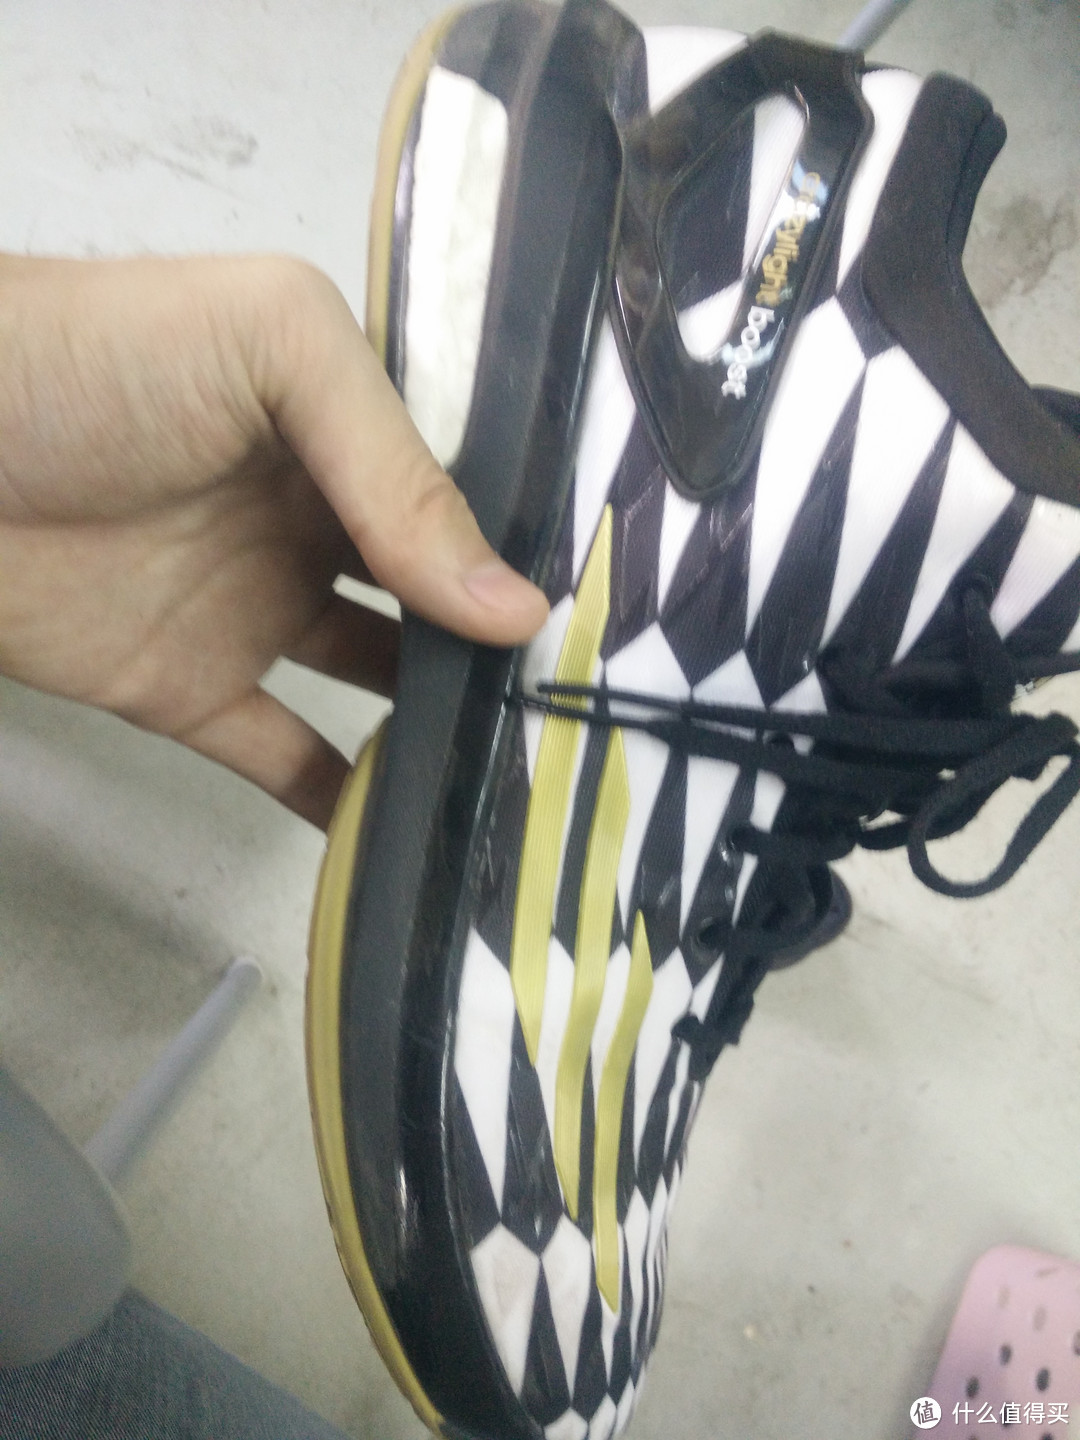 日淘 adidas 阿迪达斯 Crazy Light Boost 篮球鞋及选购经历